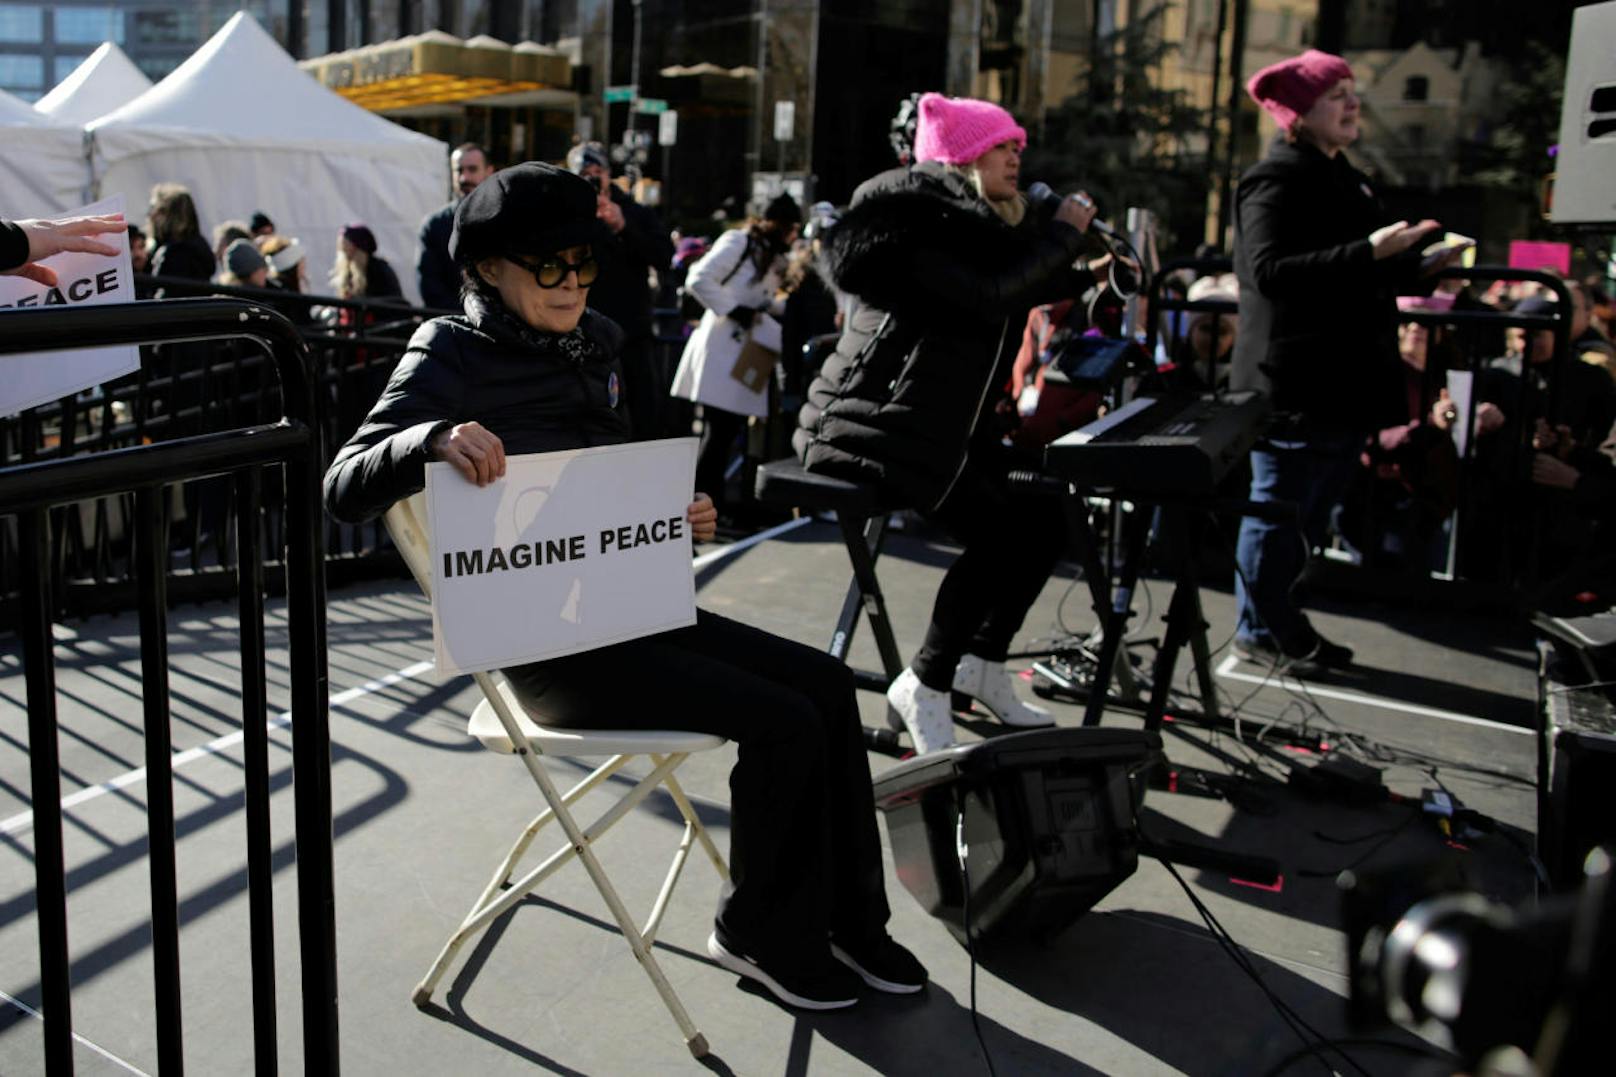 Yoko Ono und John Lennon waren schon immer Aktivisten. "Imagine Peace", angelehnt an Johns berühmtesten Song fand Yoko auch am Samstag in Manhattan / New York City